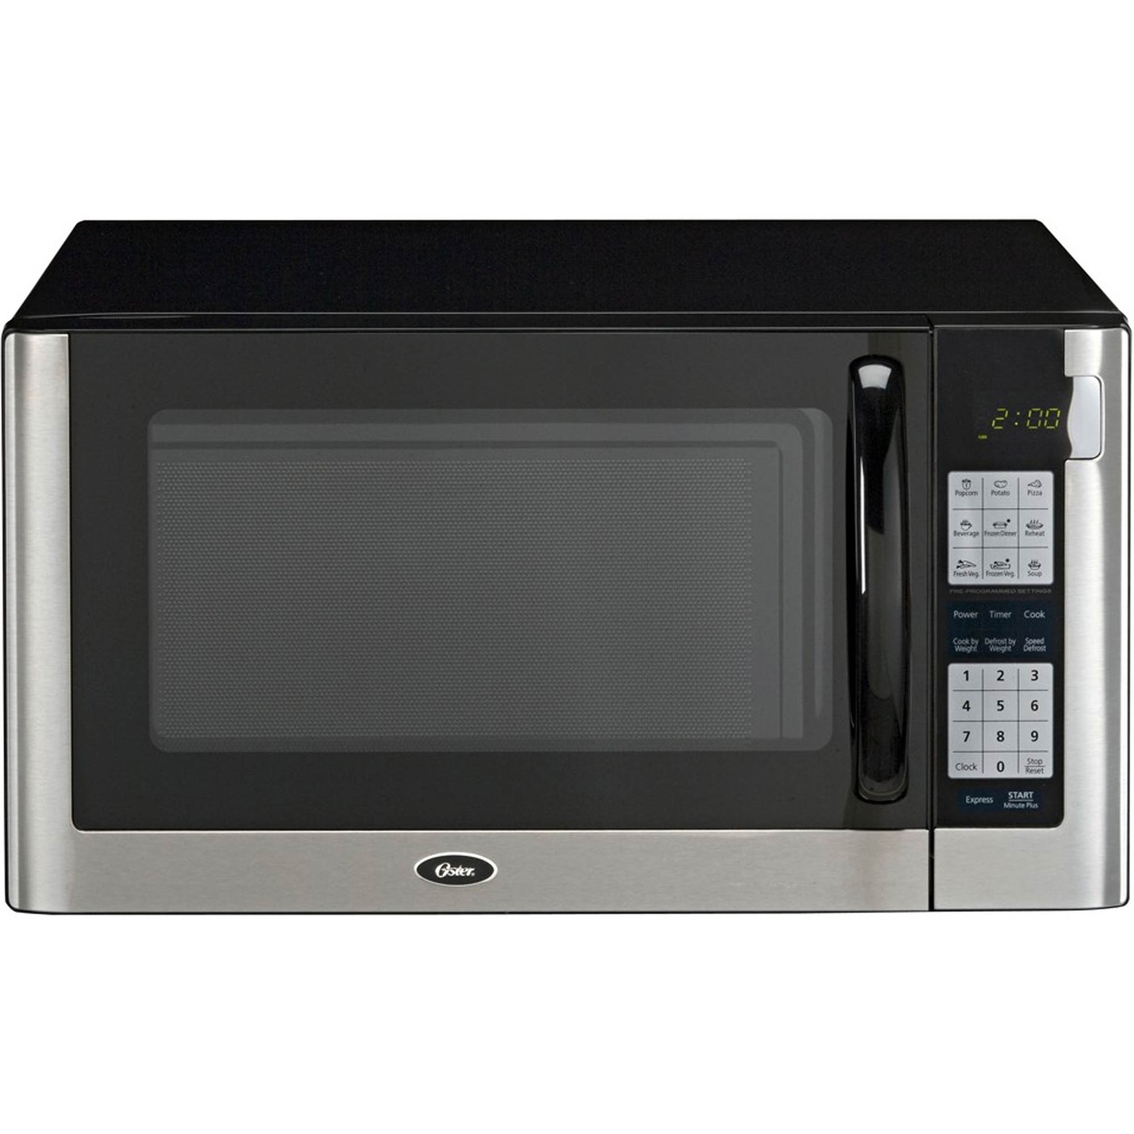 Oster 1 4 Cu Ft 1200 Watt Countertop Microwave Appliances